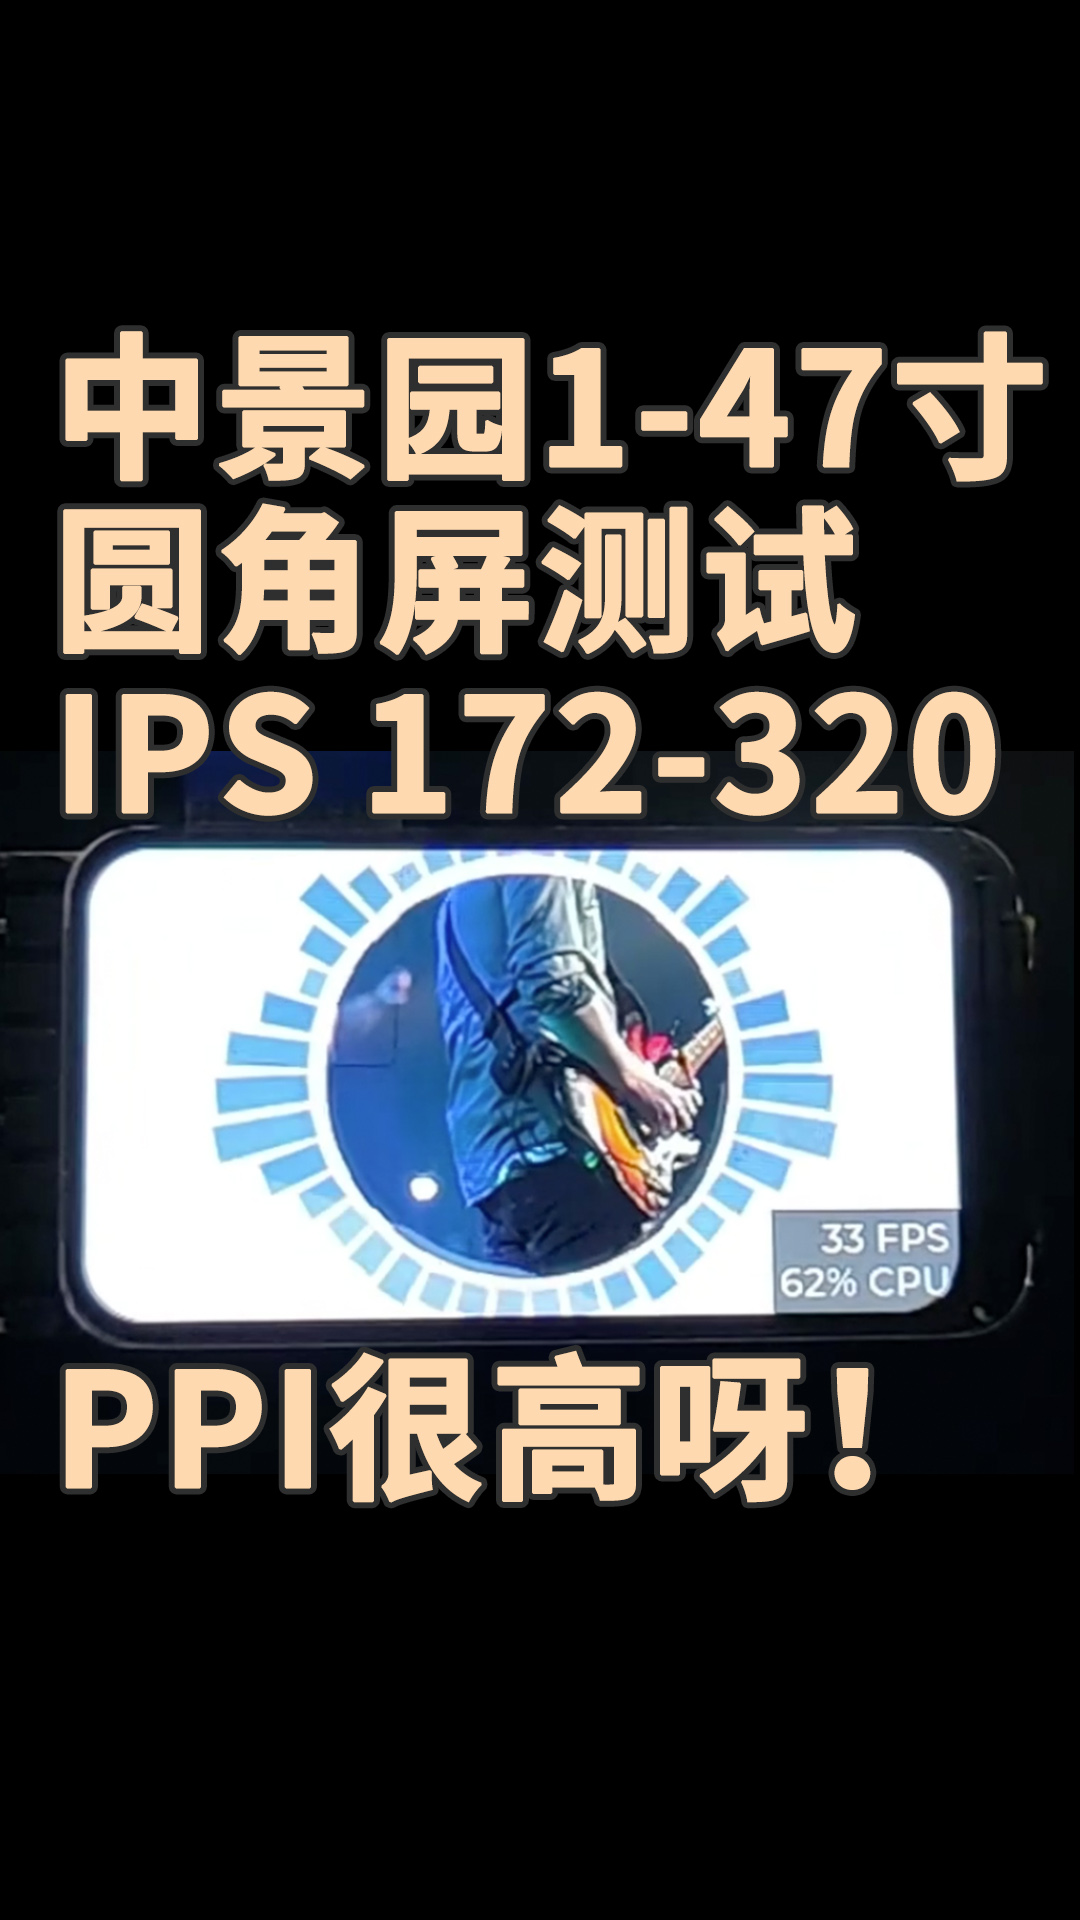 中景園1-47寸圓角屏測試 IPS 172-320，PPI很高呀！